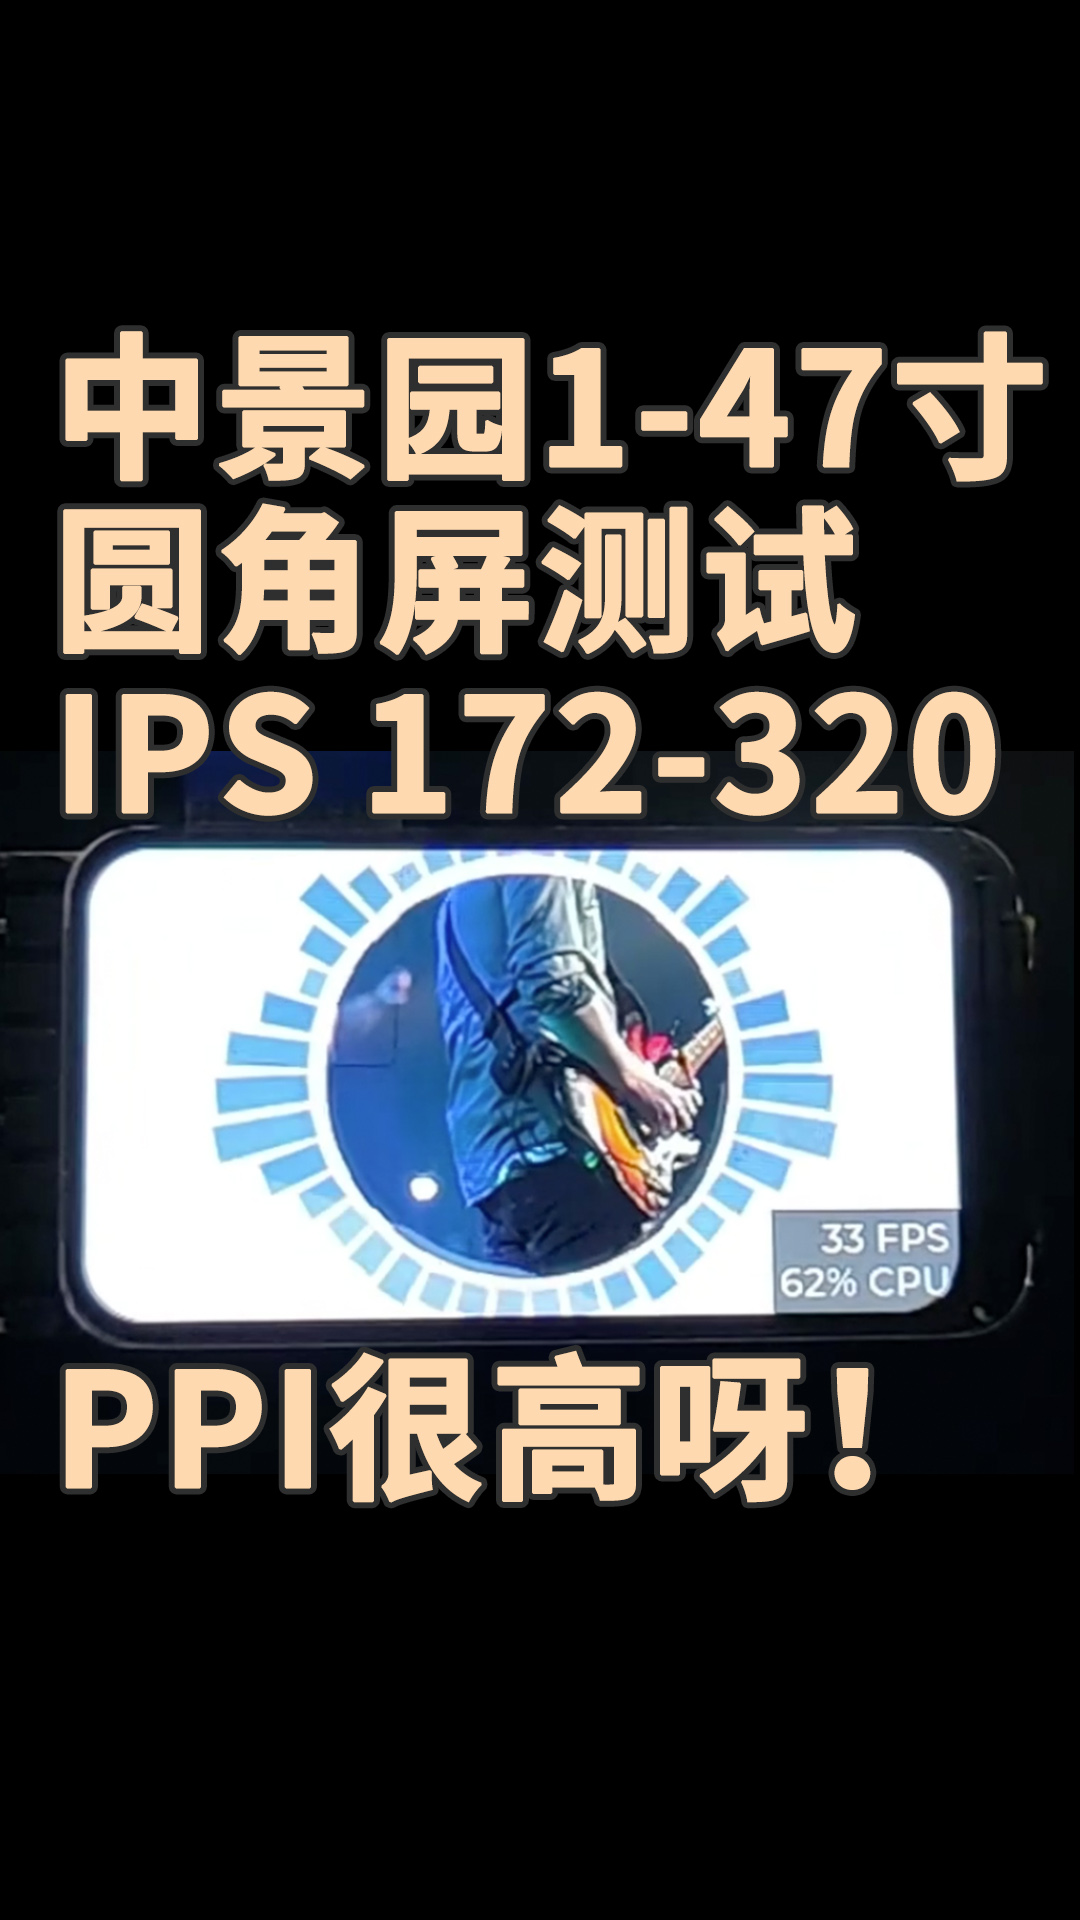 中景園1-47寸圓角屏測試 IPS 172-320，PPI很高呀！